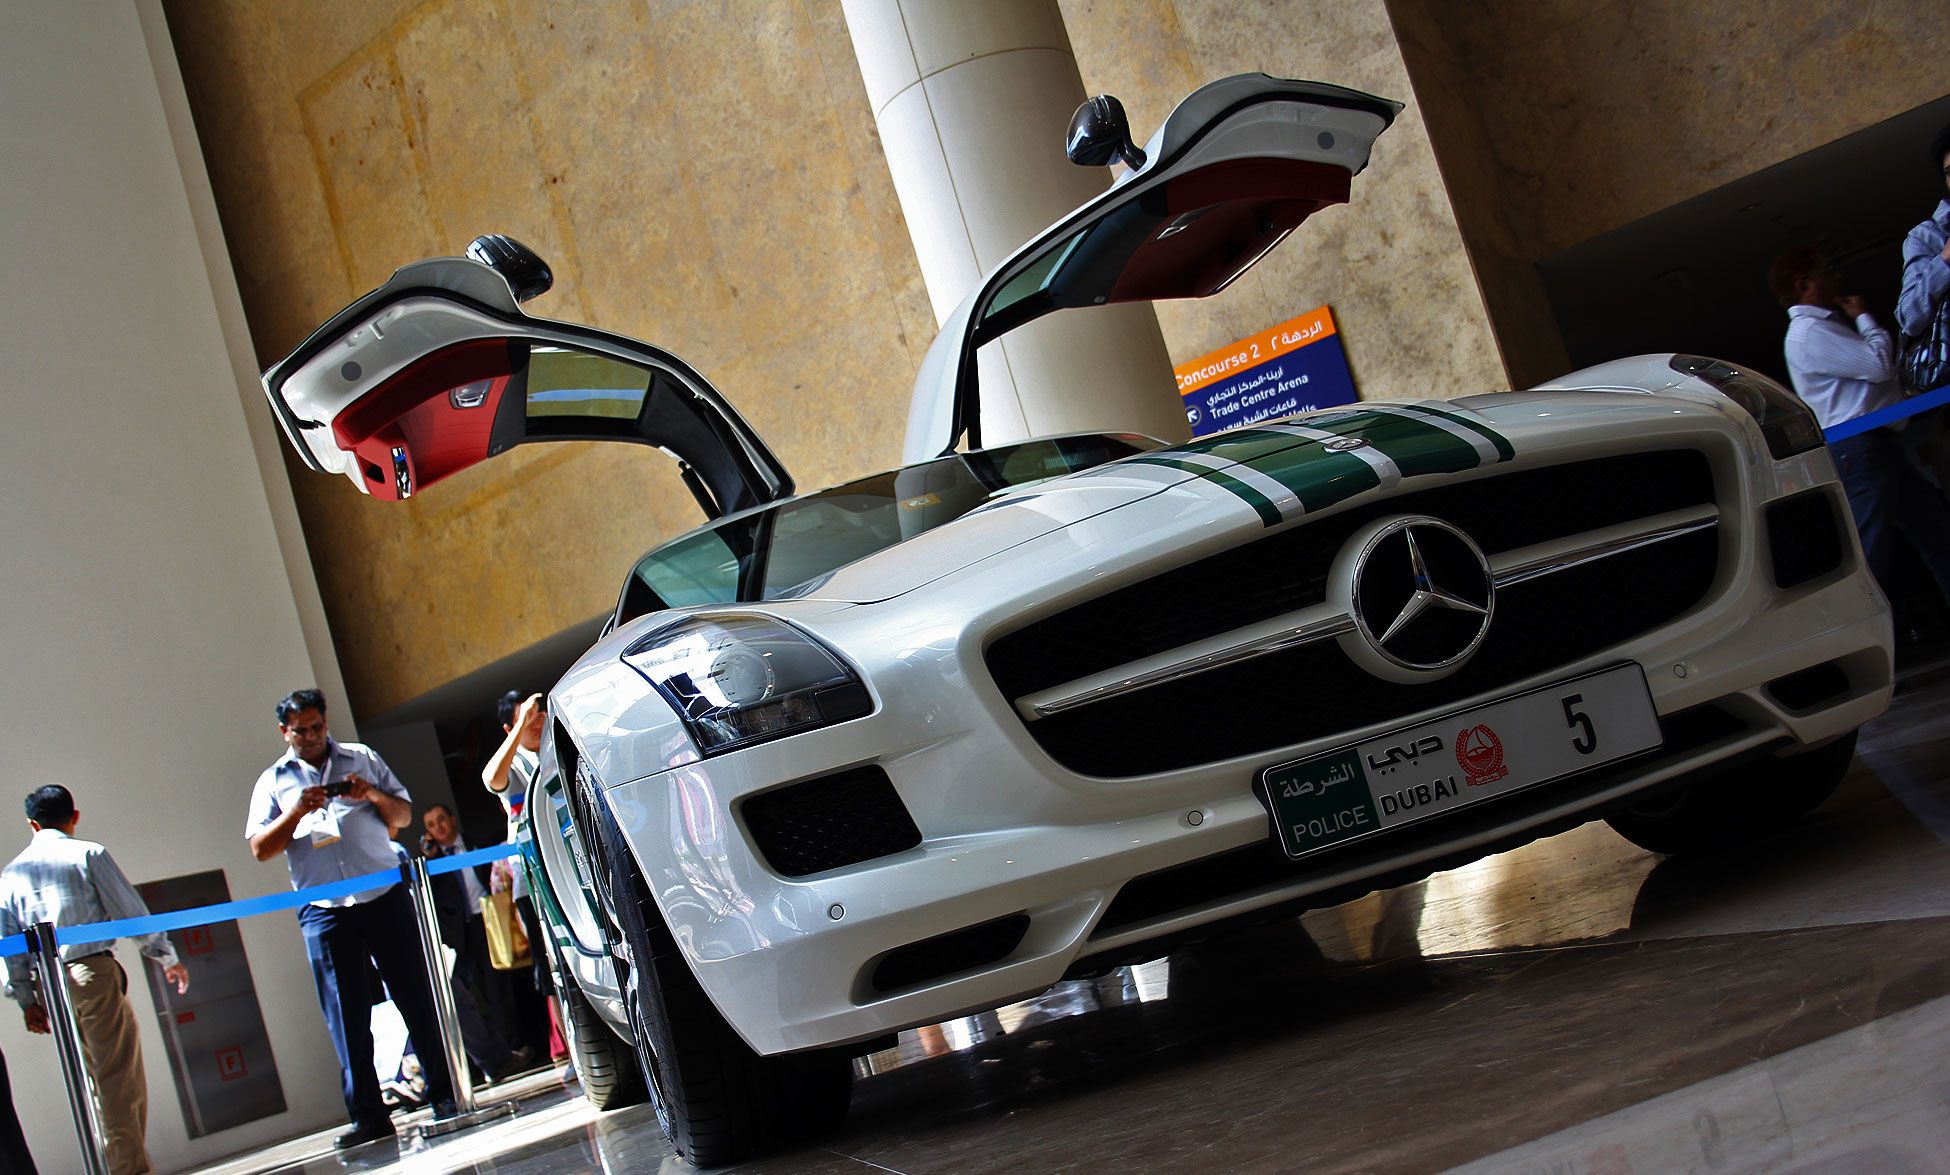 Le super car della polizia di Dubai - immagine 4